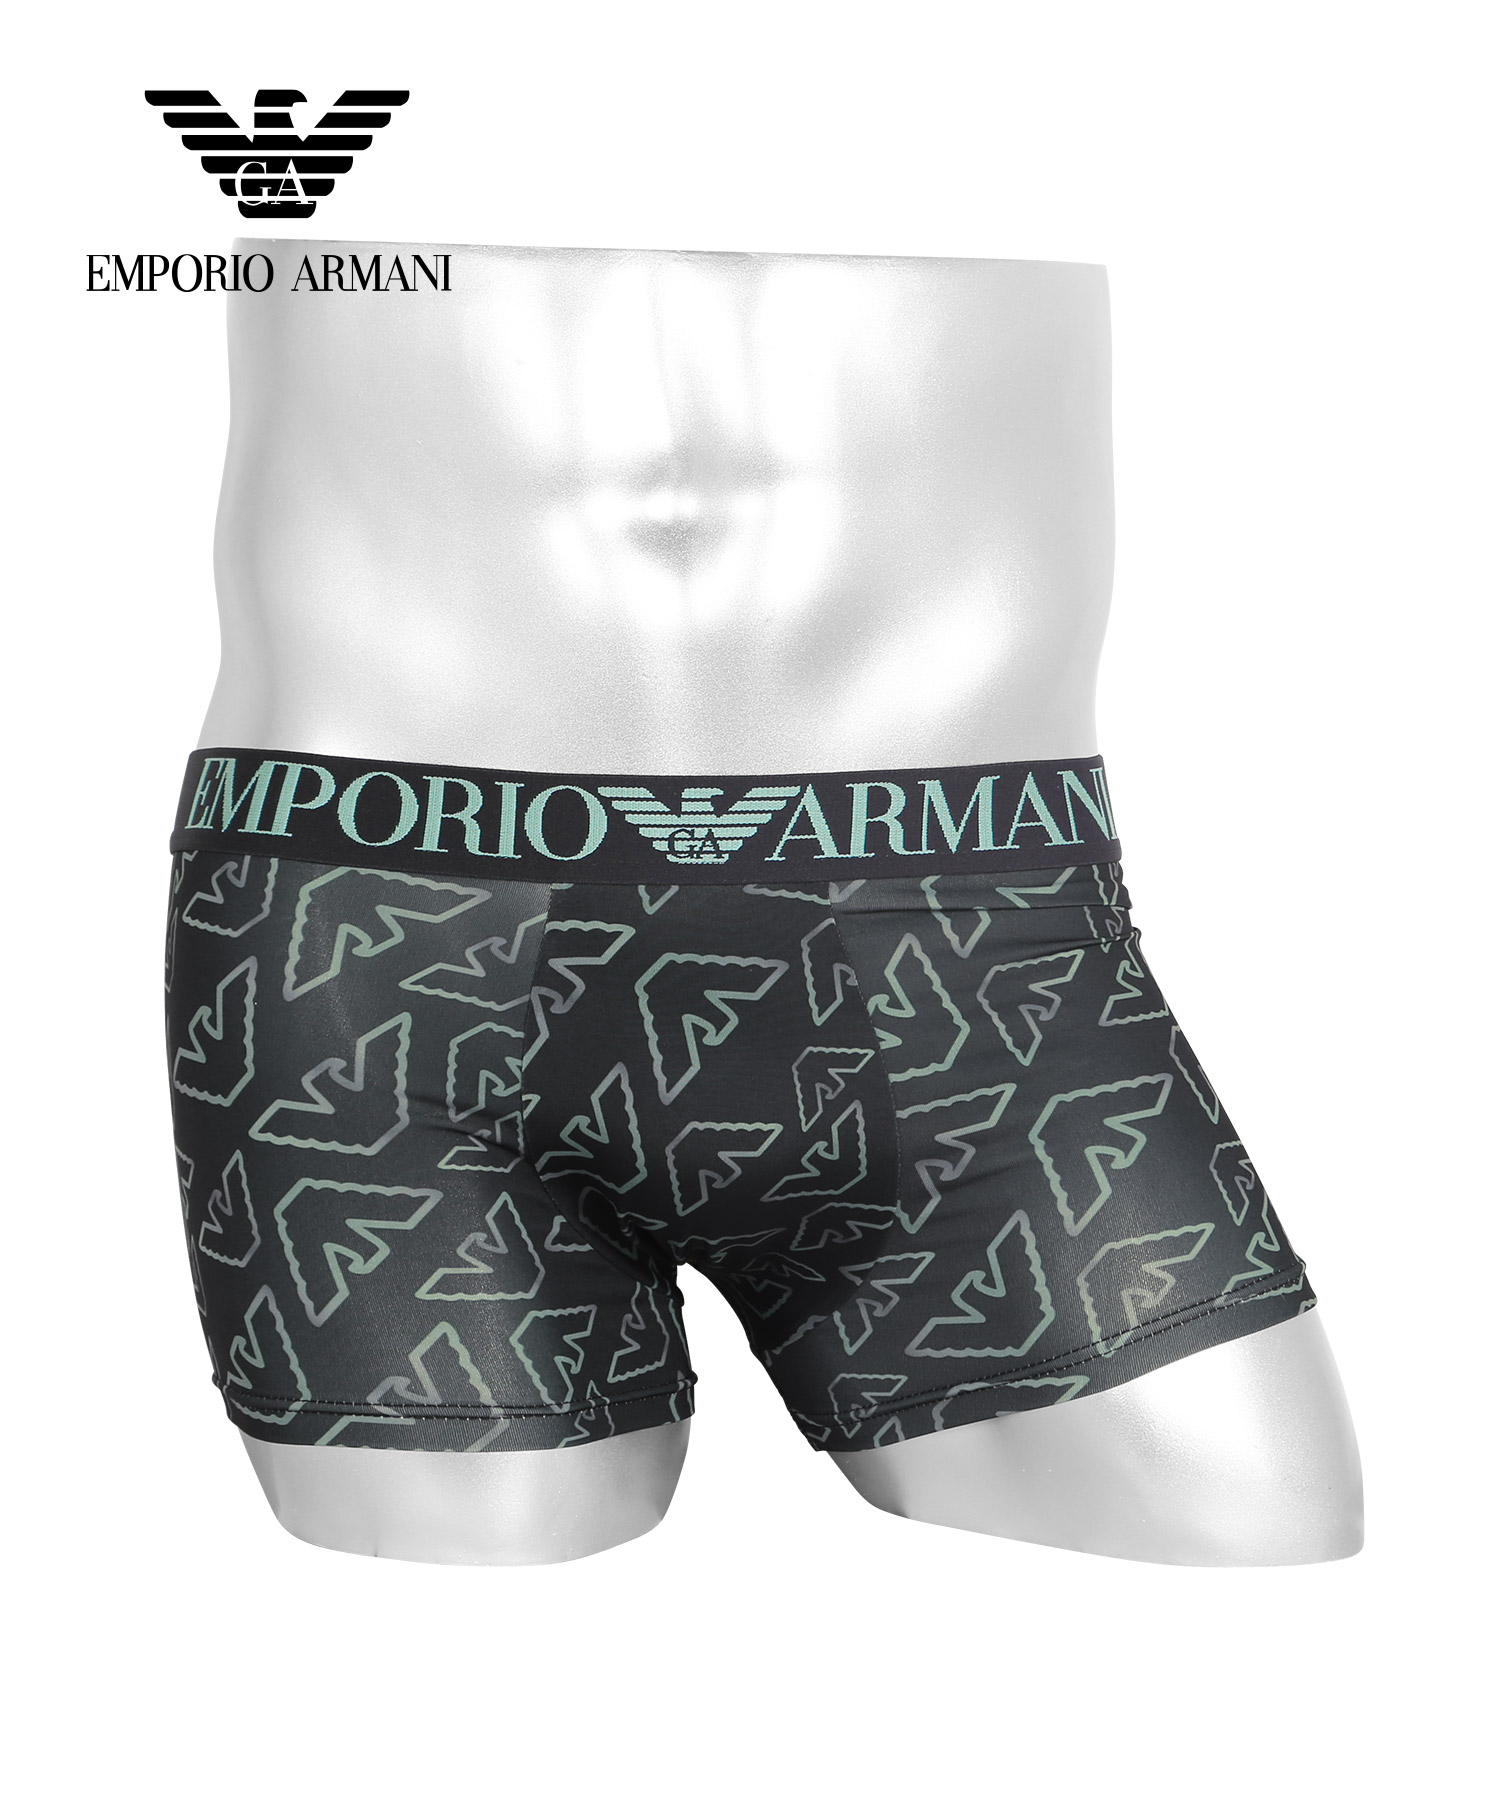 エンポリオ アルマーニ EMPORIO ARMANI ボクサーパンツ メンズ アンダーウェア 男性 下着 ツルツル 速乾 メール便 父の日